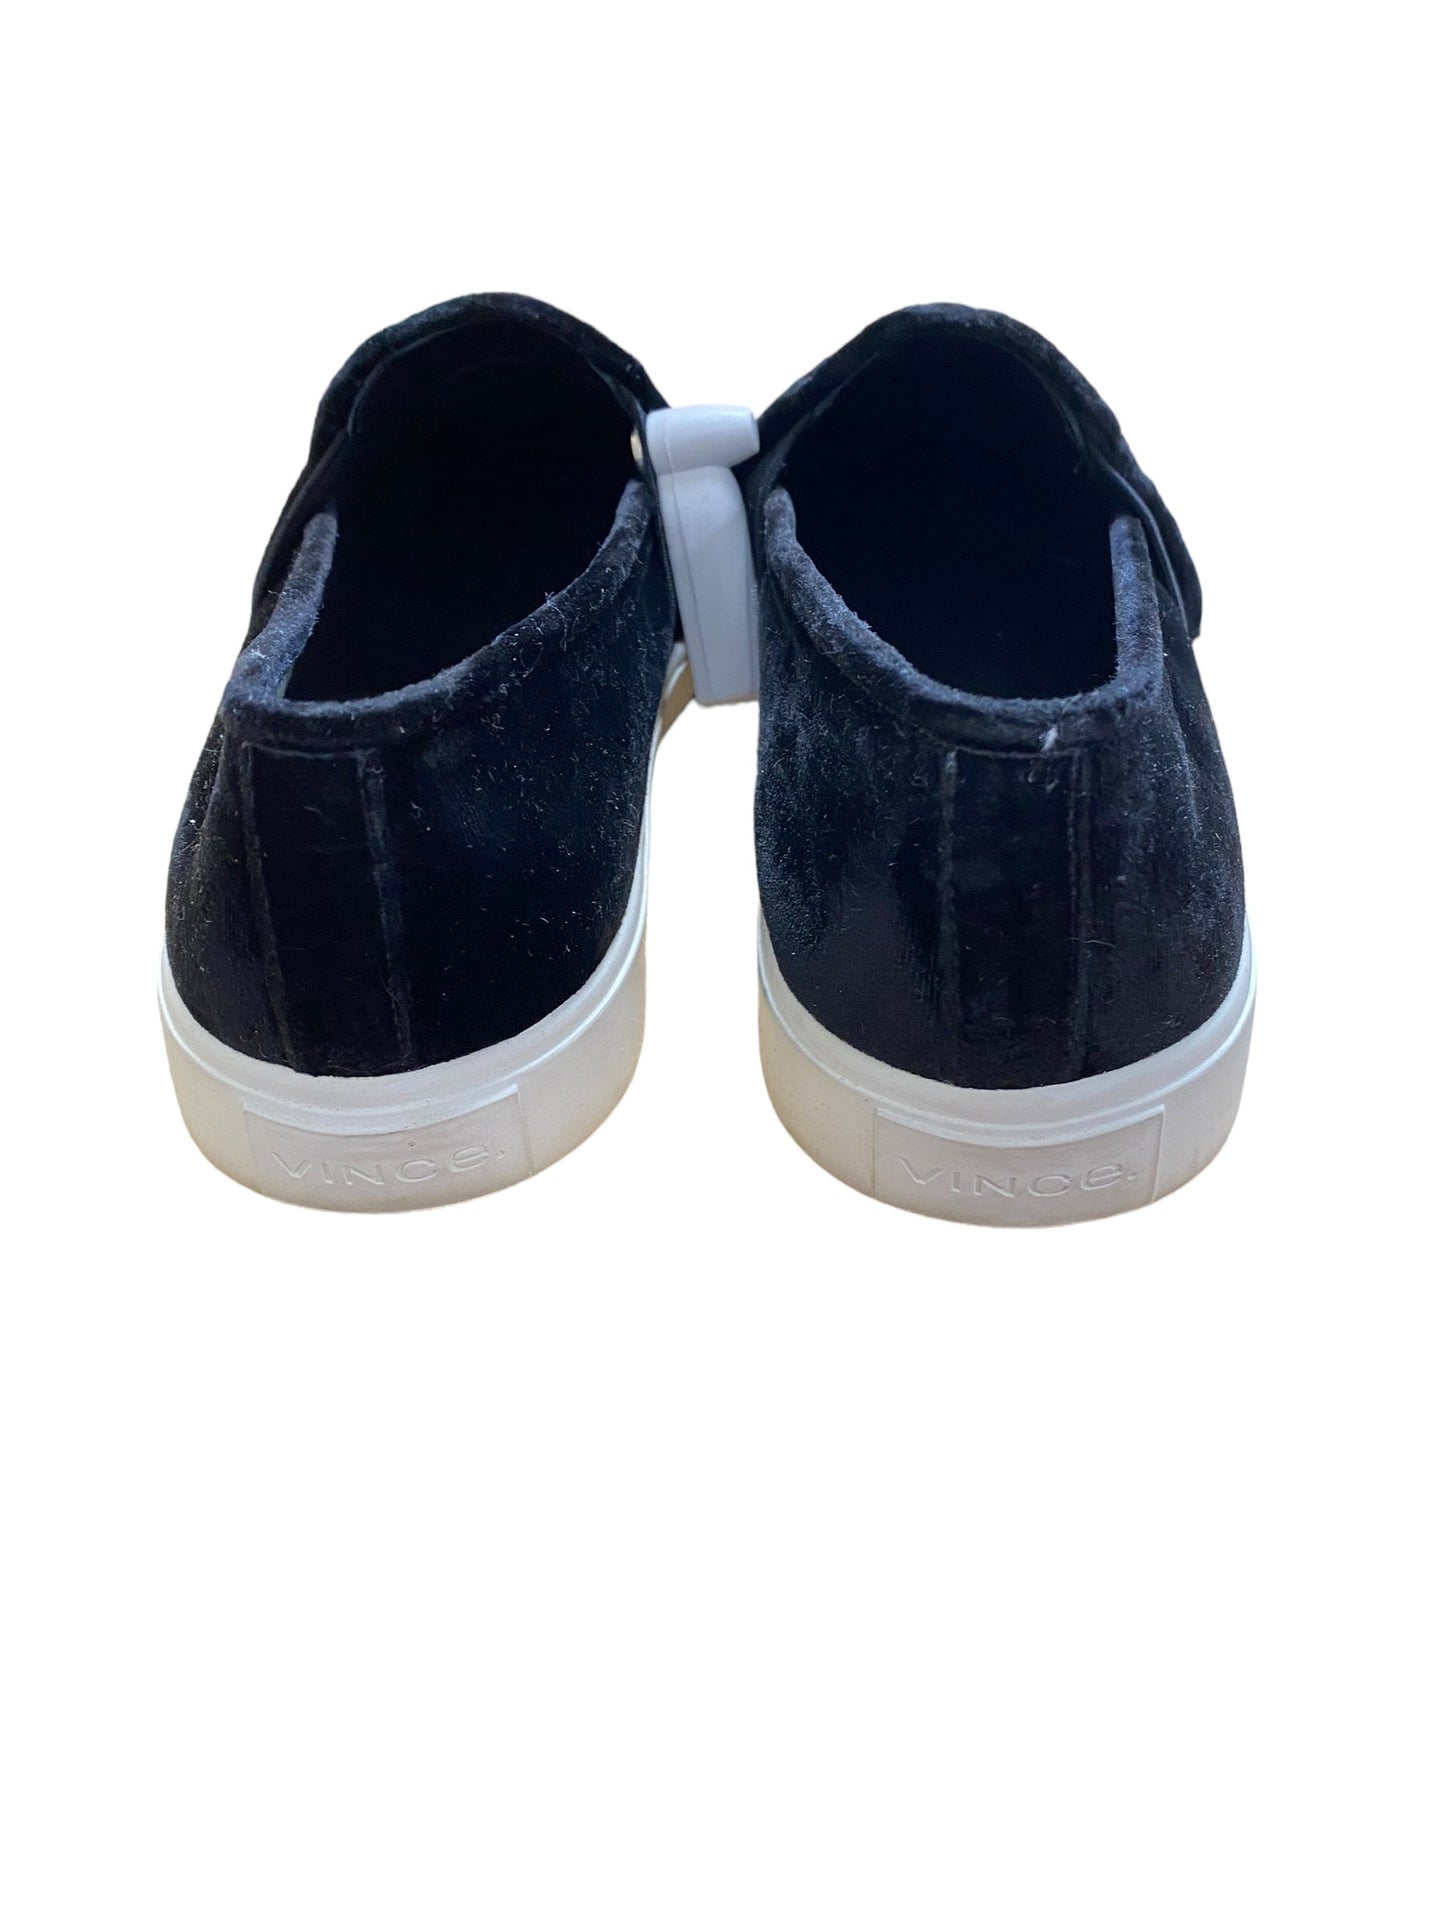 Black Shoes Flats Vince, Size 9